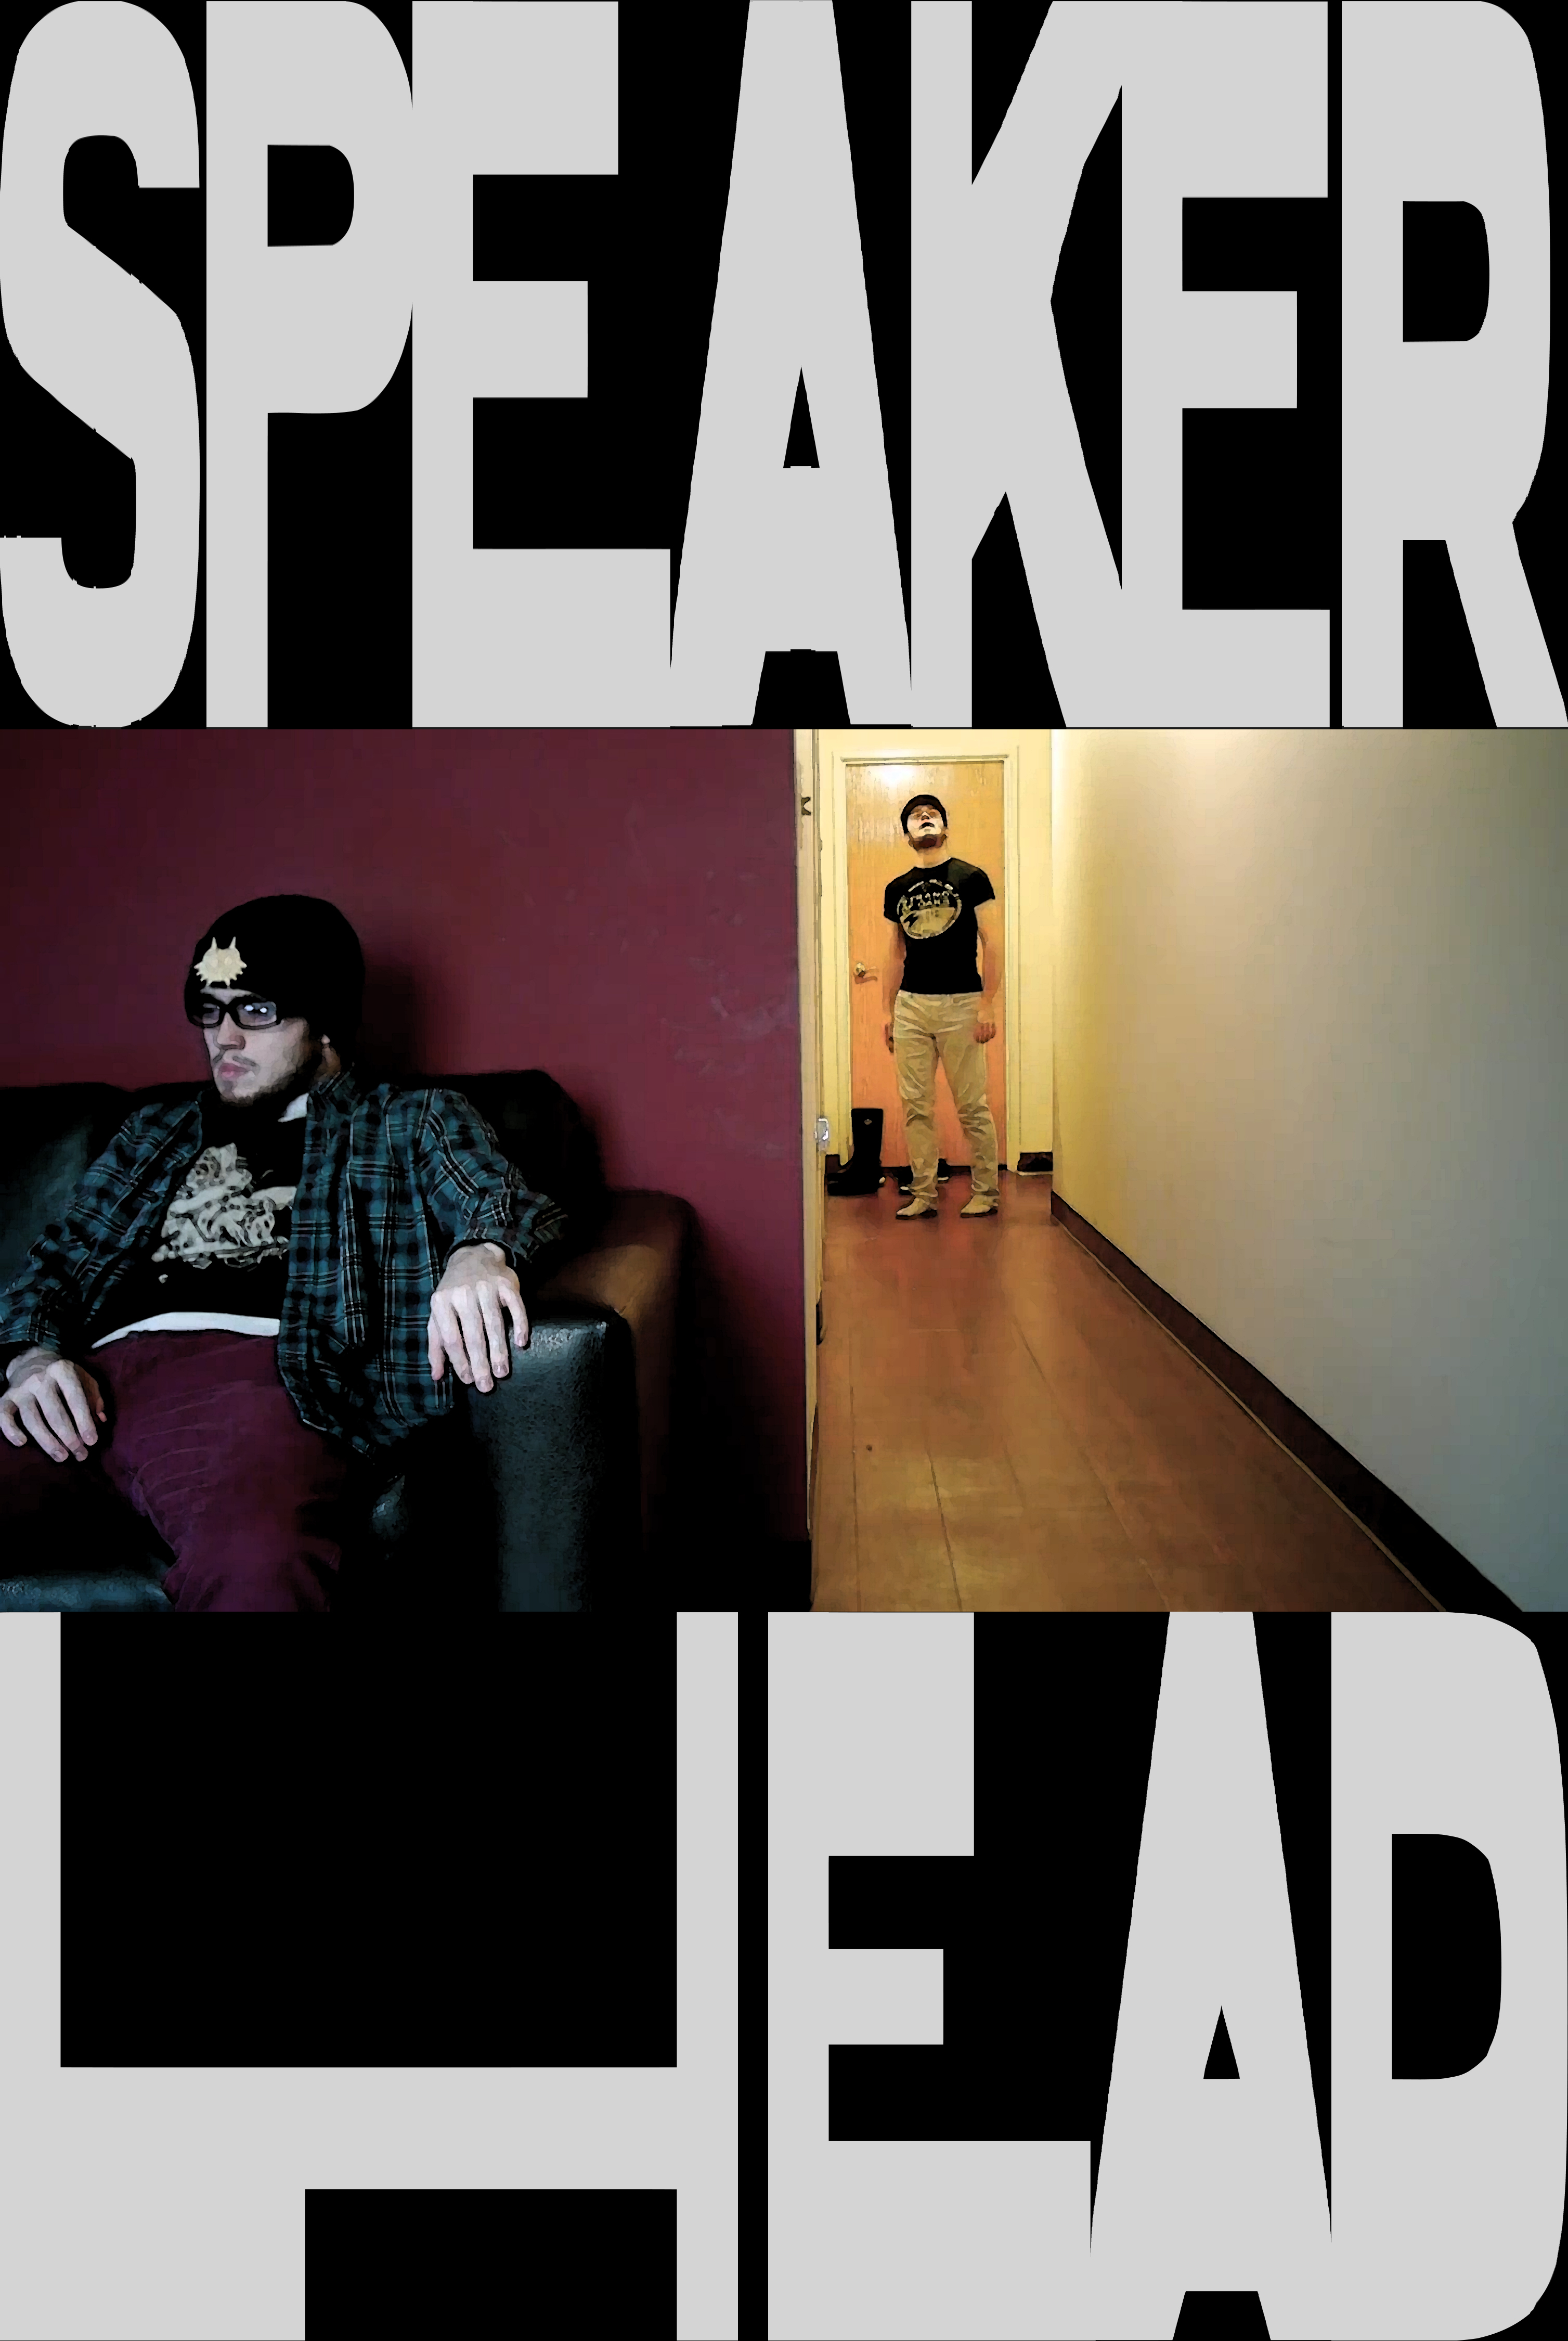 Speakerhead